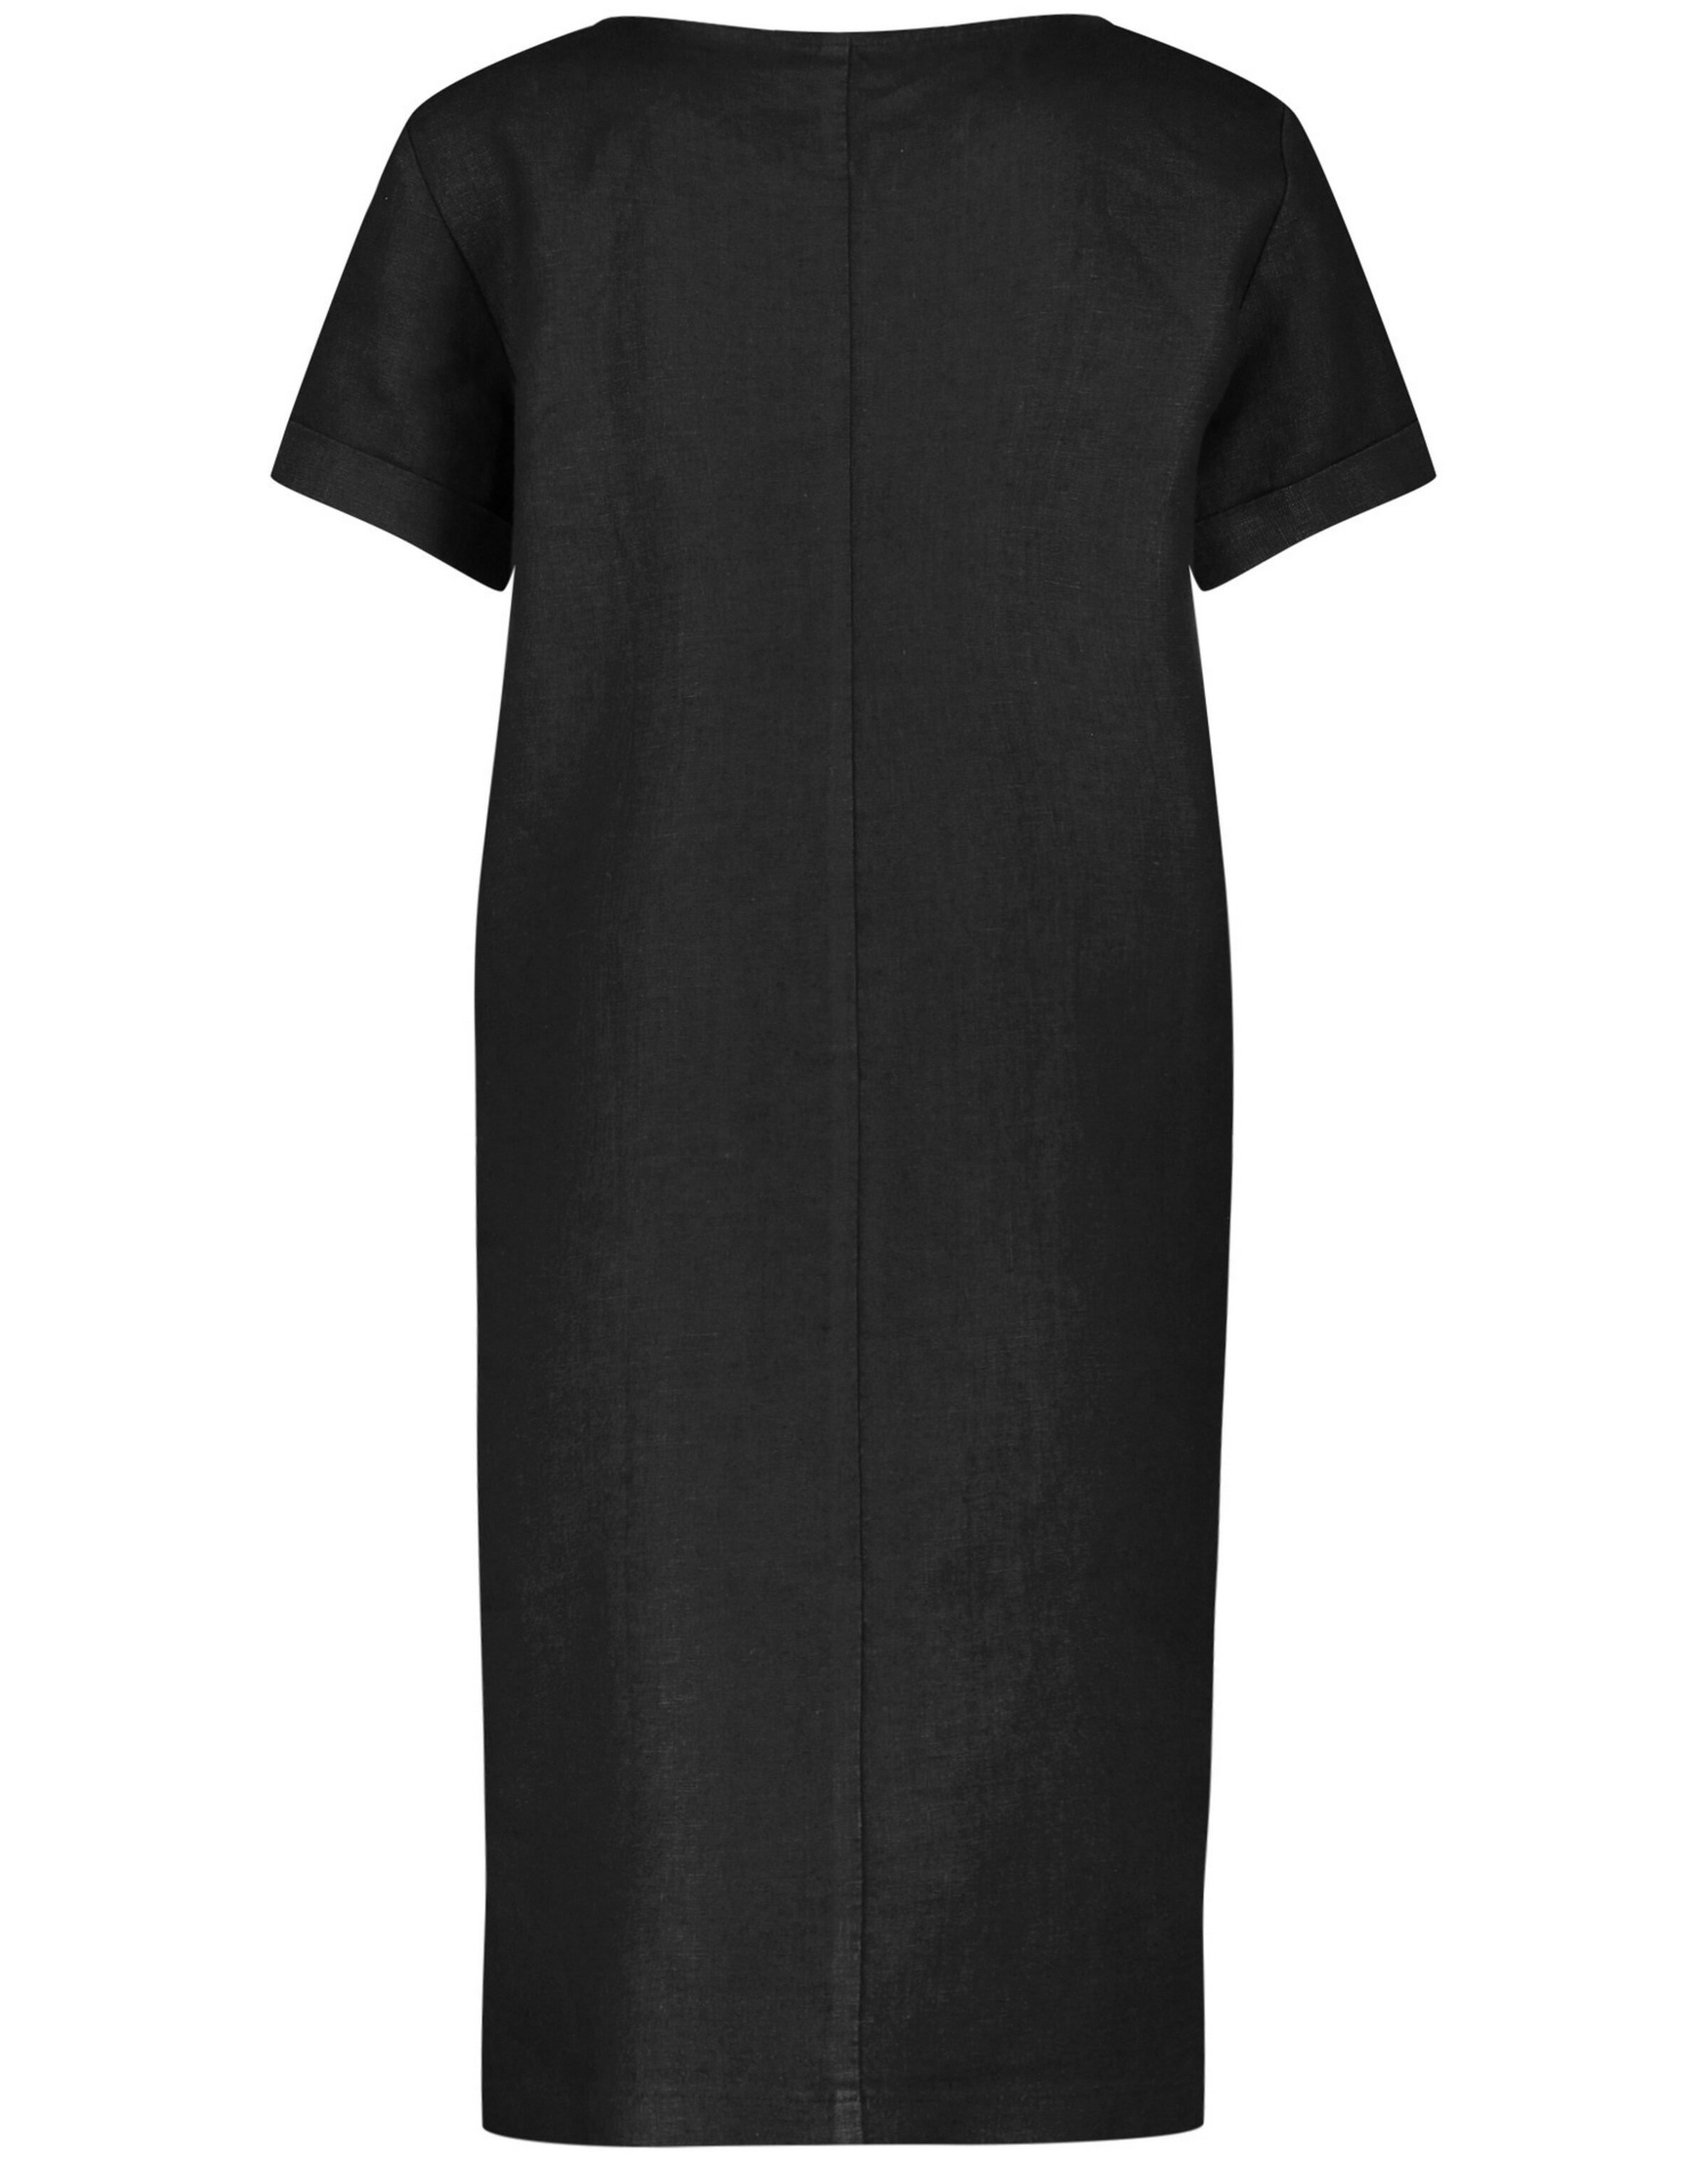 Frauen Große Größen TAIFUN Kleid in Schwarz - FQ29037